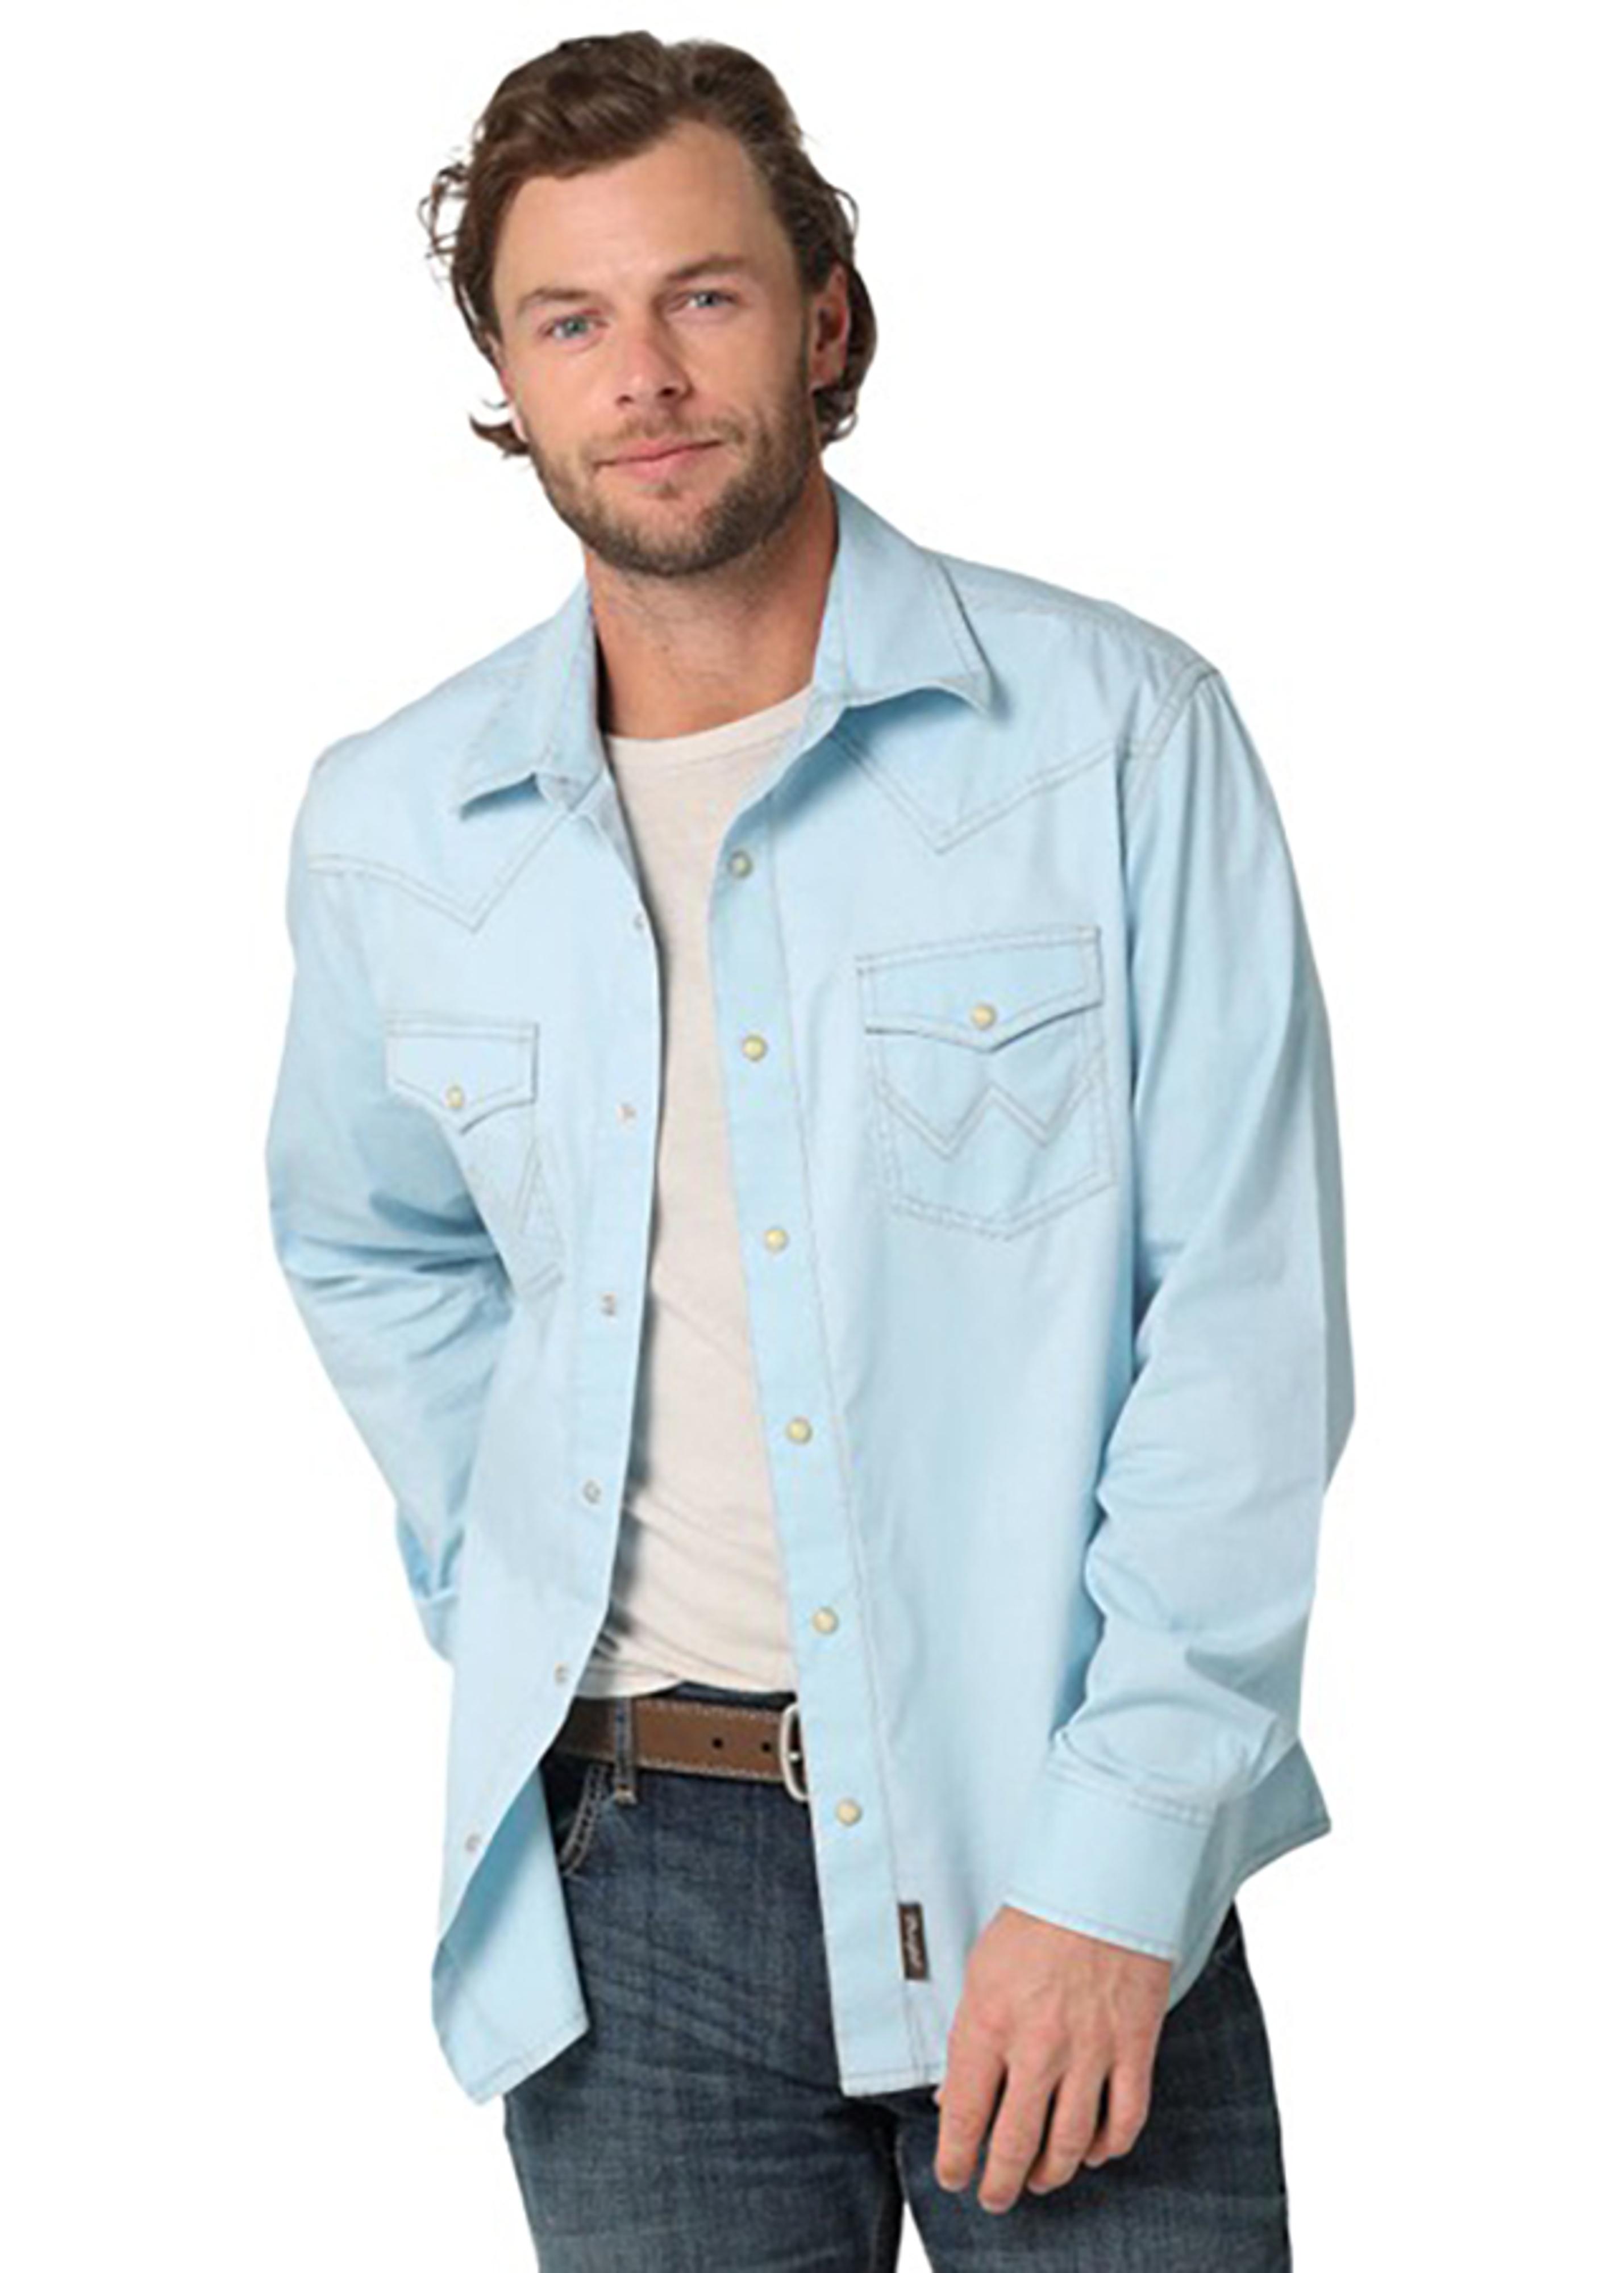 Wrangler Men's Retro Long Sleeve Denim Shirt - L - Blue